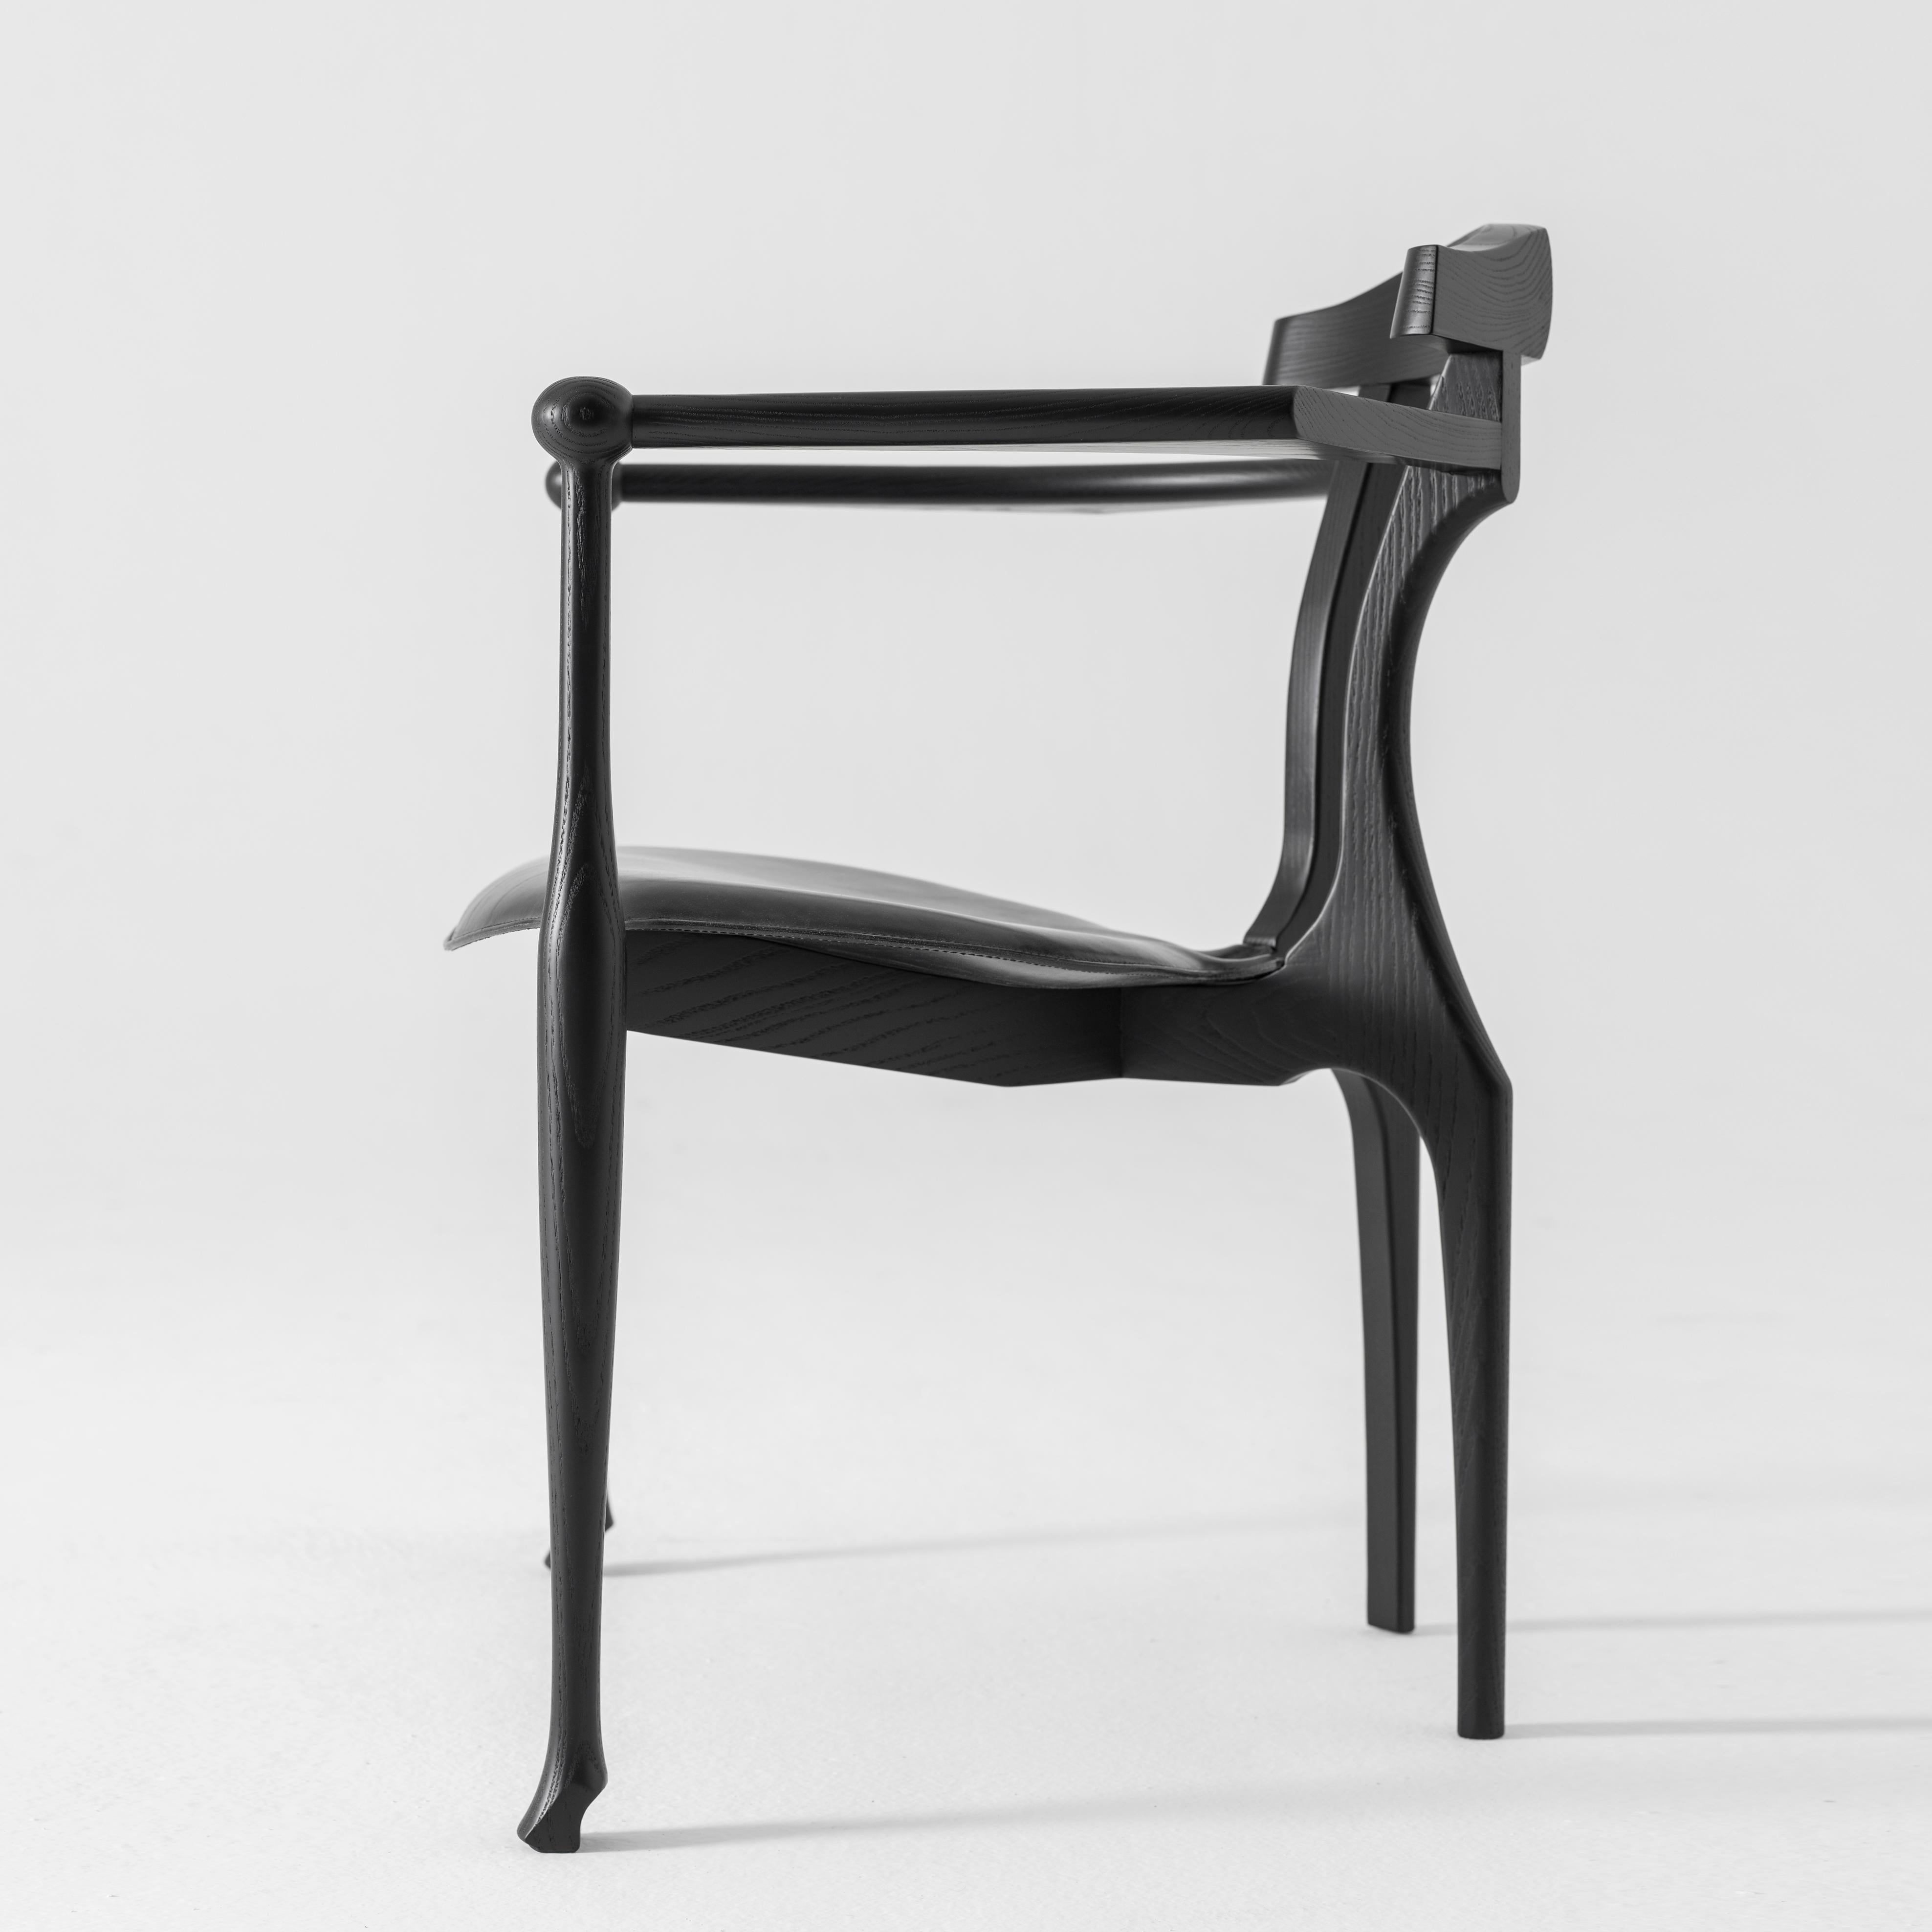 Fauteuil Gaulino conçu par Oscar Tusquets et fabriqué par BD Barcelona design, circa 2010.

Frêne massif laqué noir avec assise en cuir noir.


La chaise Gaulino qui, conçue en 1987, a été sélectionnée pour le prix de design industriel et